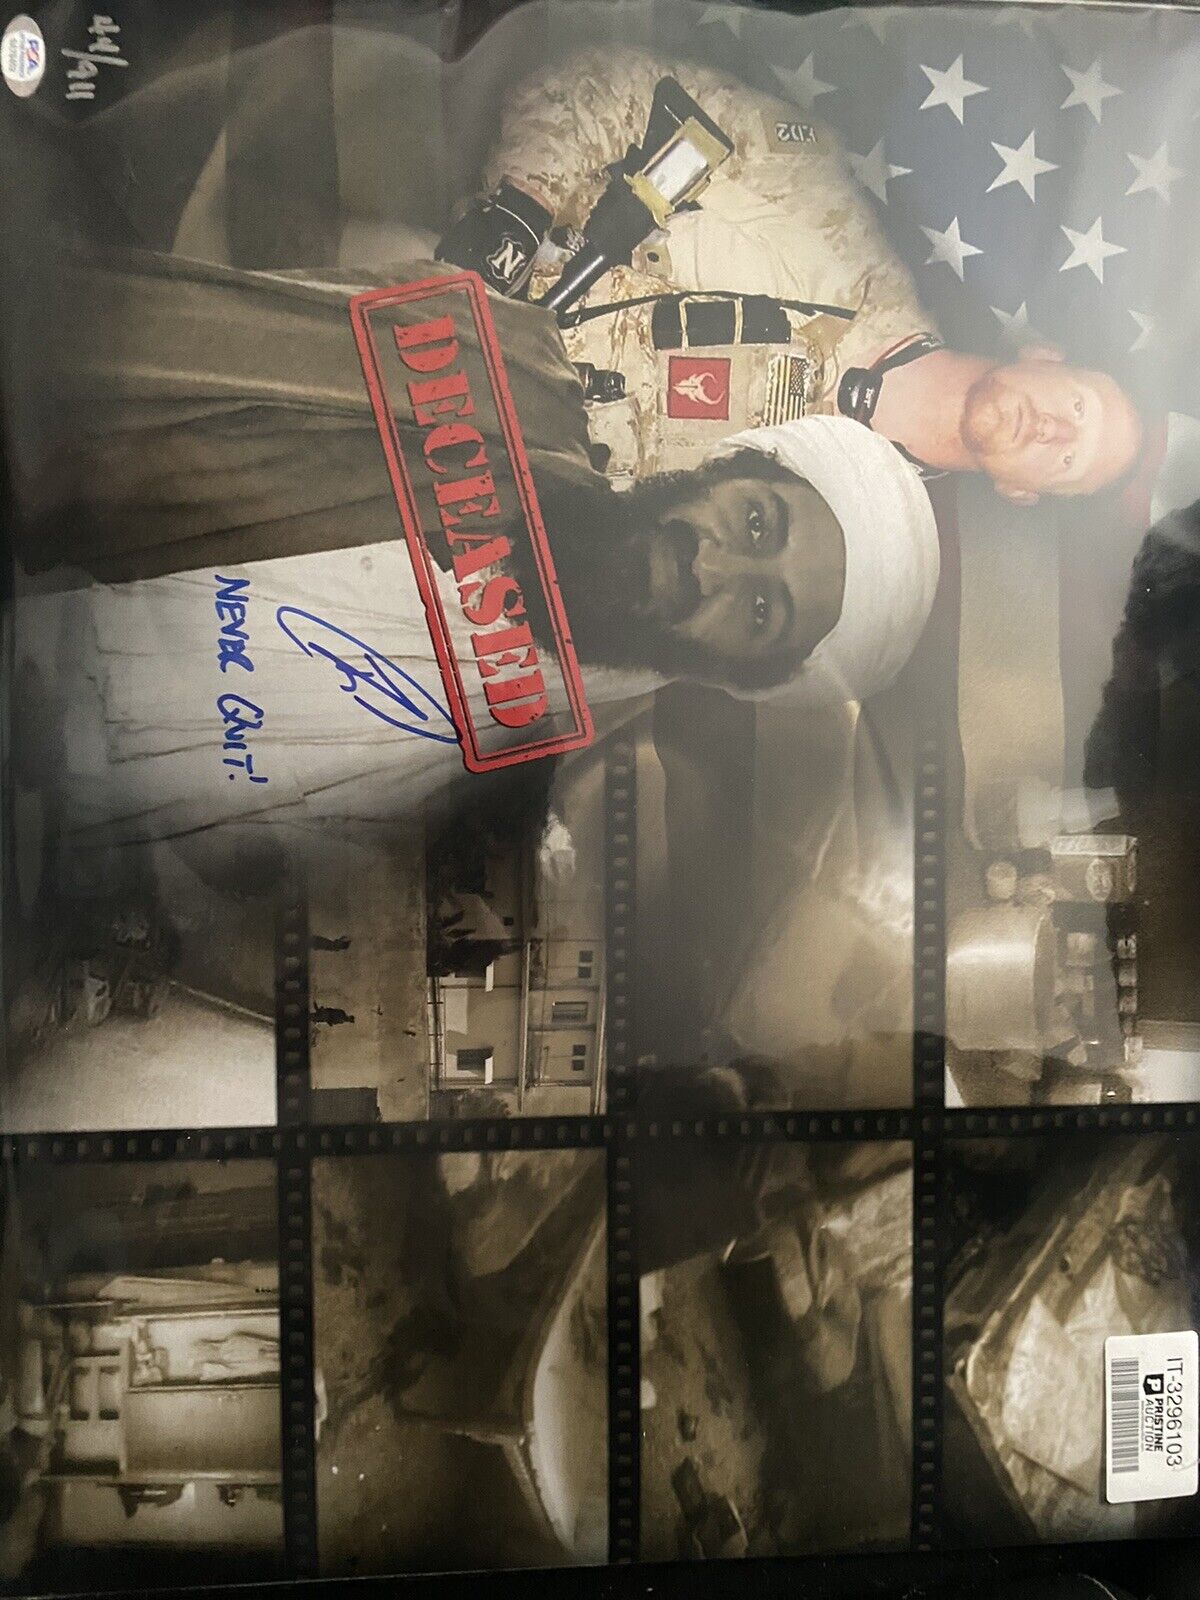 robert oneill signed osama bin Laden Poster 44/911